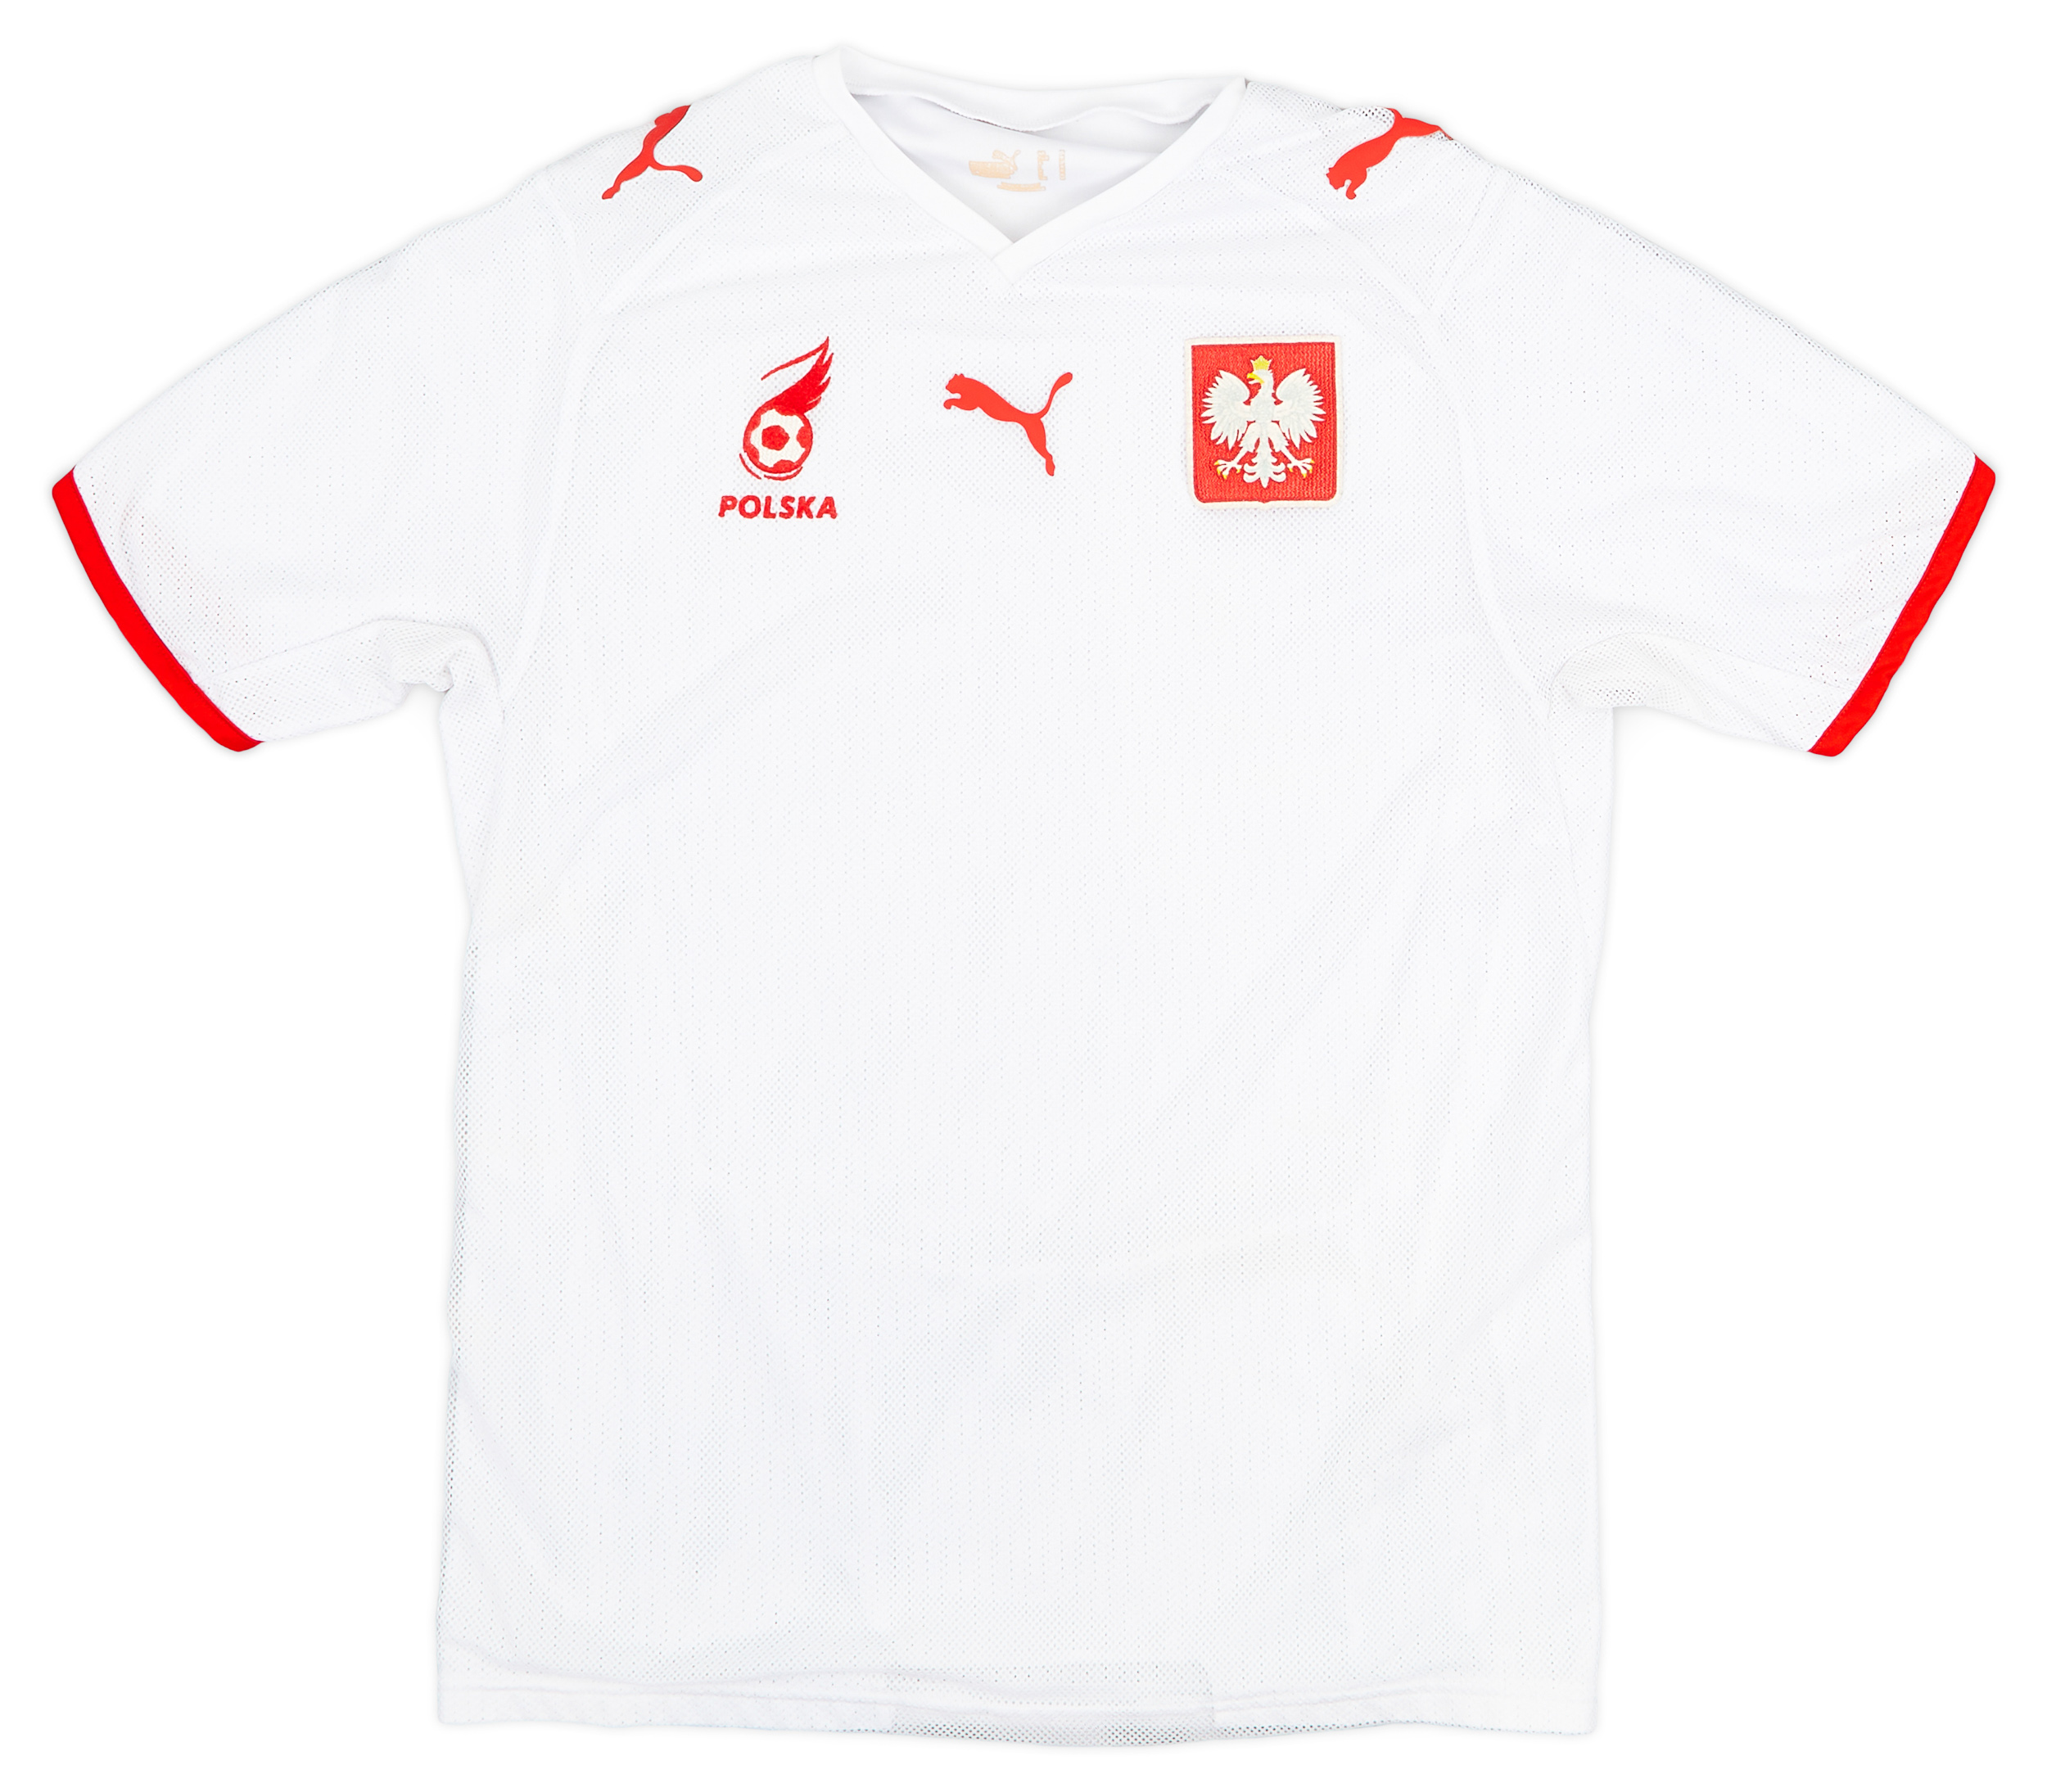 2008 Poland Home Shirt - 8/10 - ()